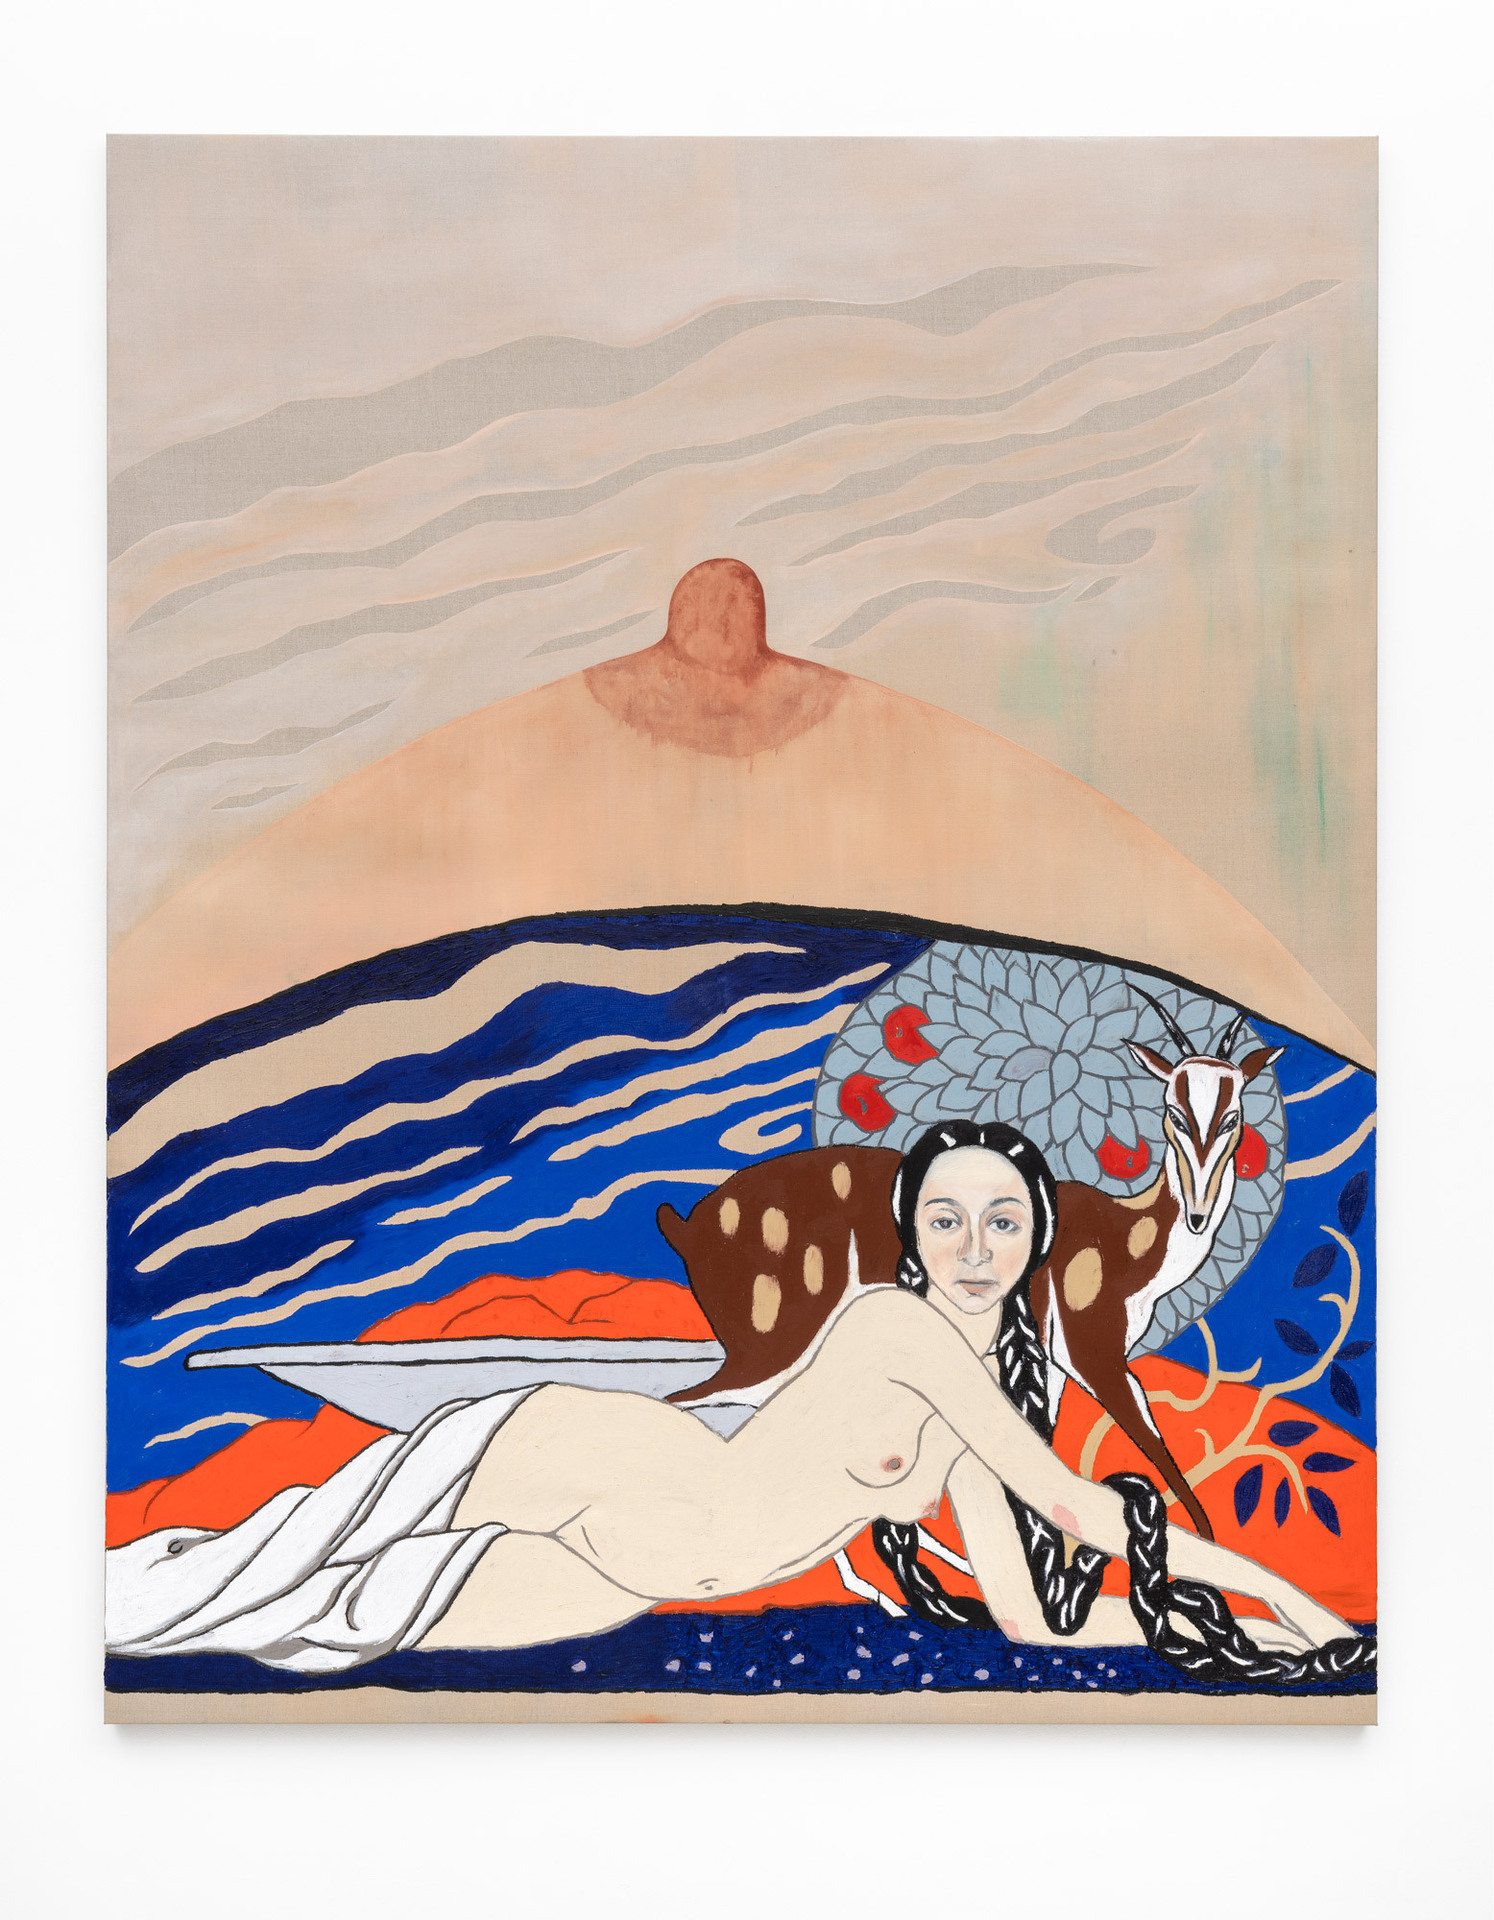 Jagoda Bednarsky, Shadowland (Artemis), 2020, oil, gauche and acrylic on canvas, 200 x 160 cm